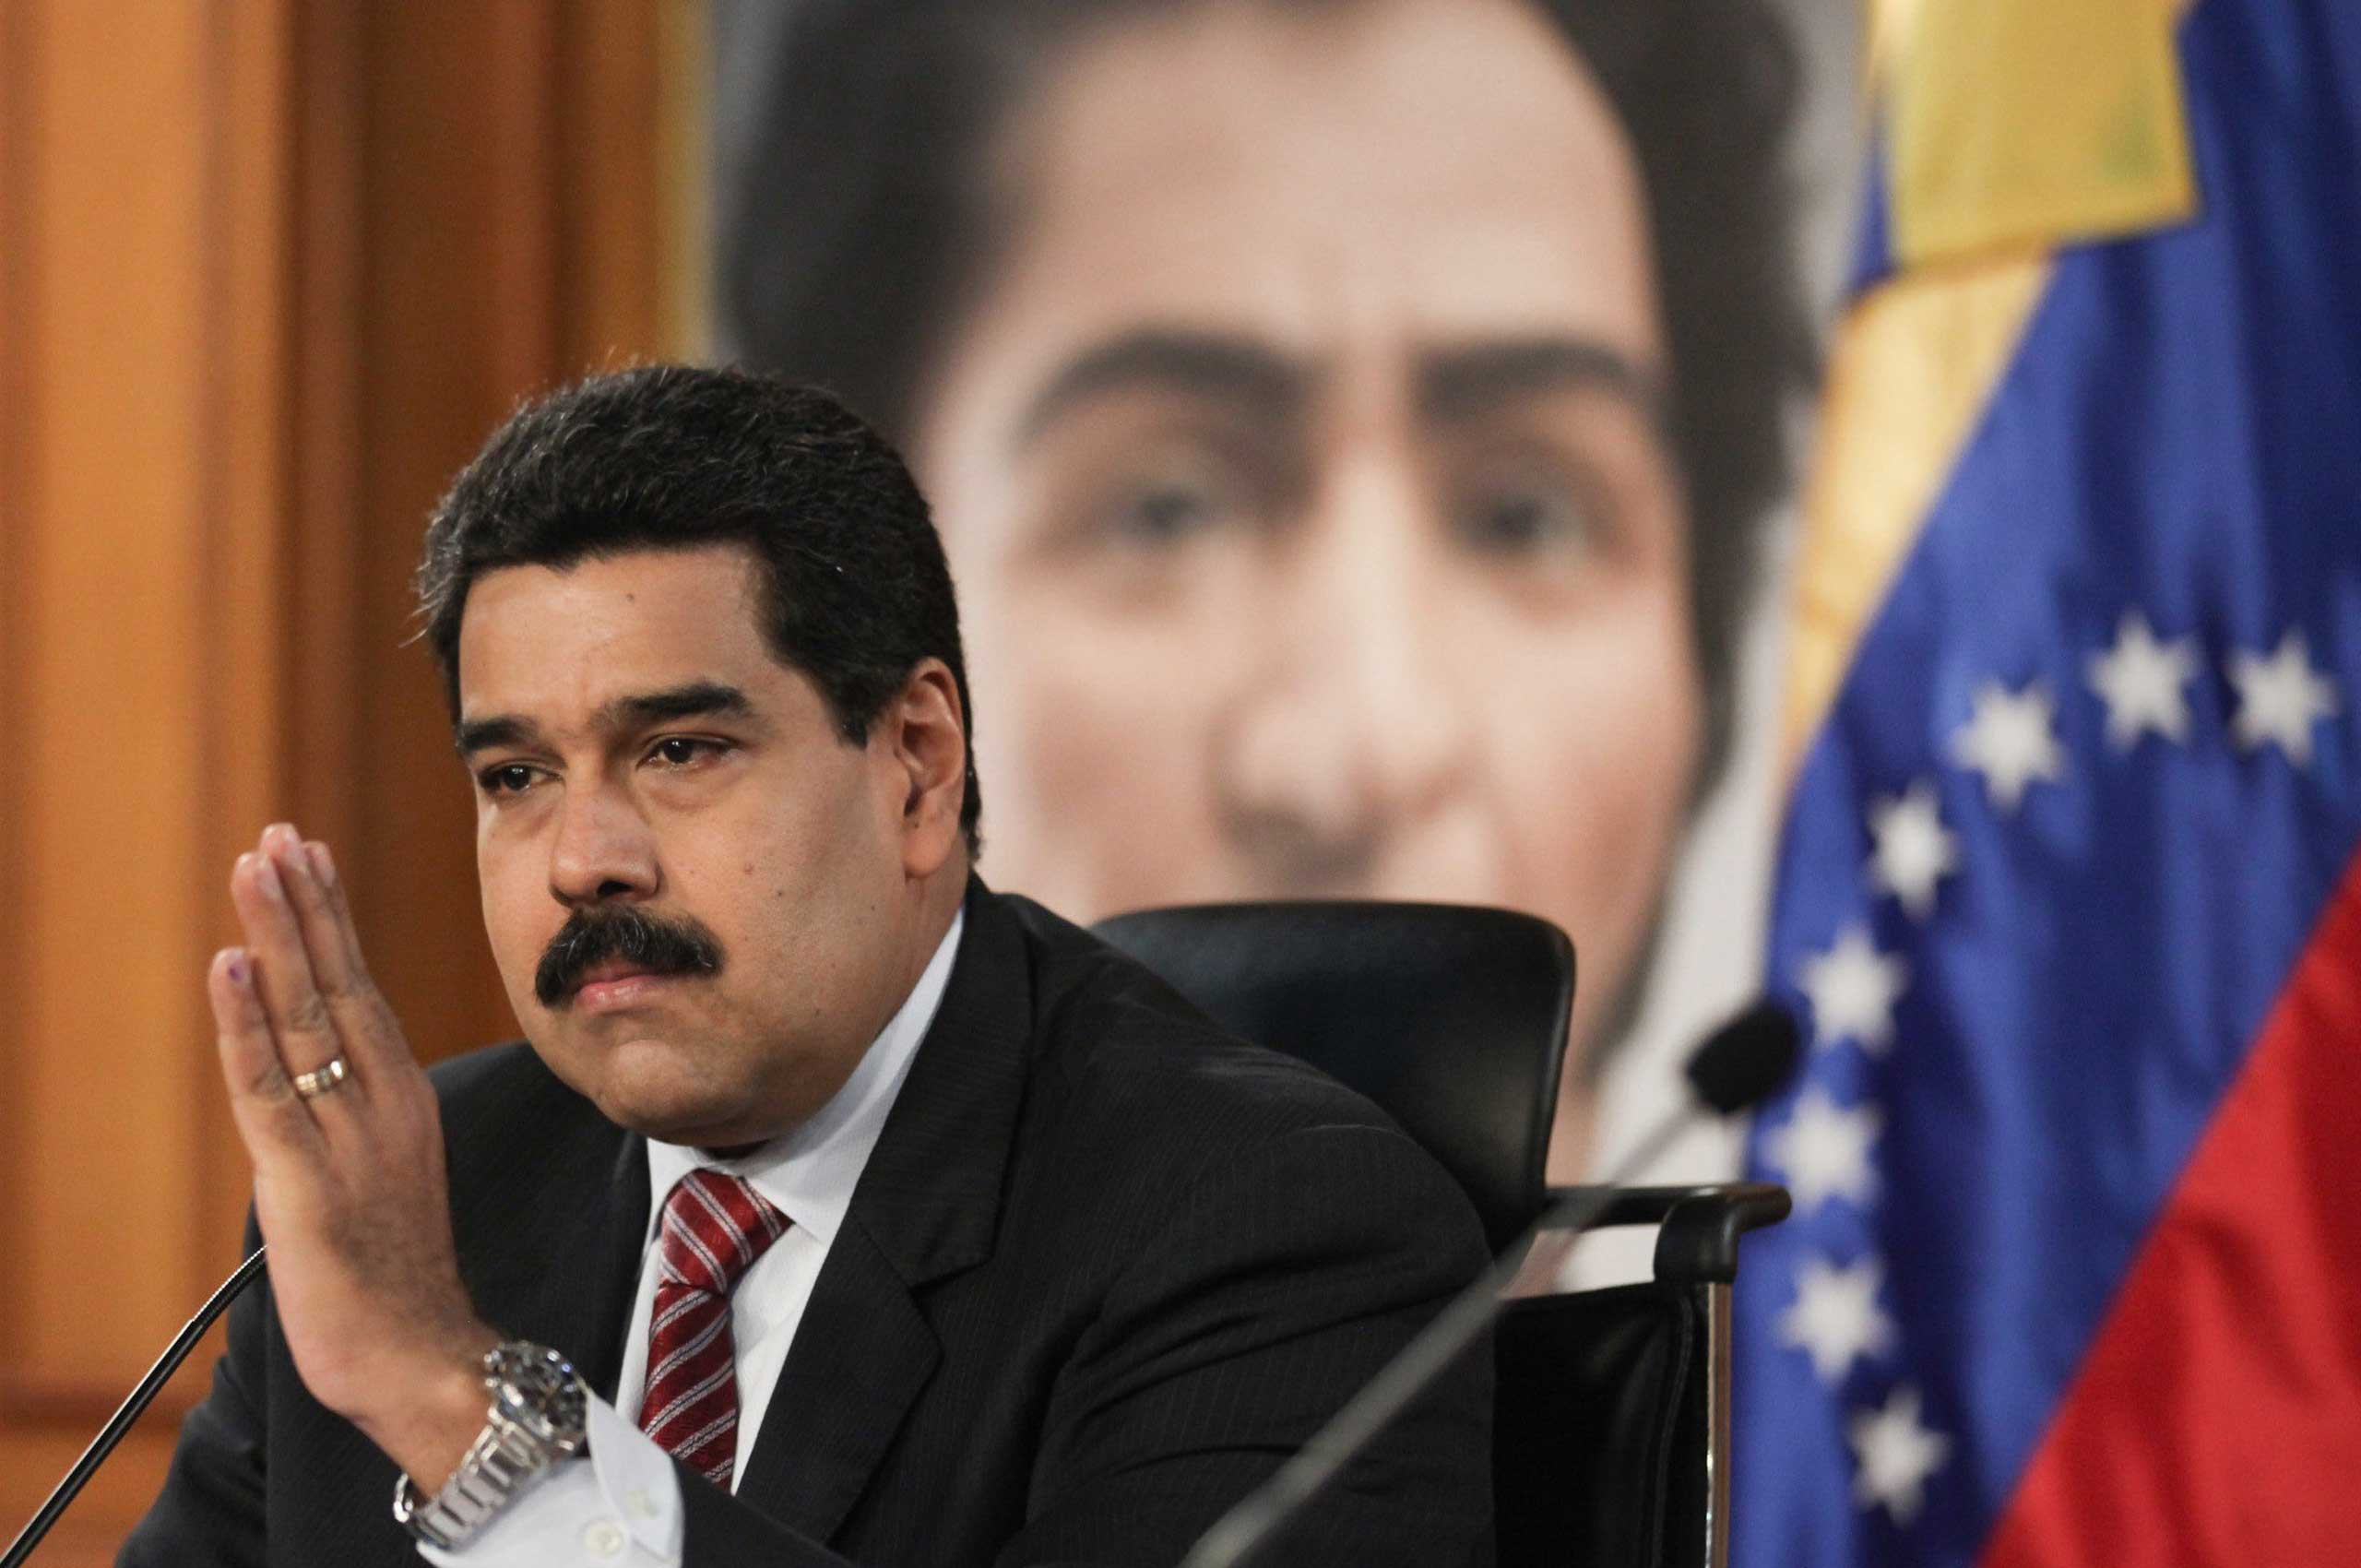 President Nicolas Maduro takes part in a press conference in Caracas, Venezuela, on Dec. 2, 2014. (Corbis)